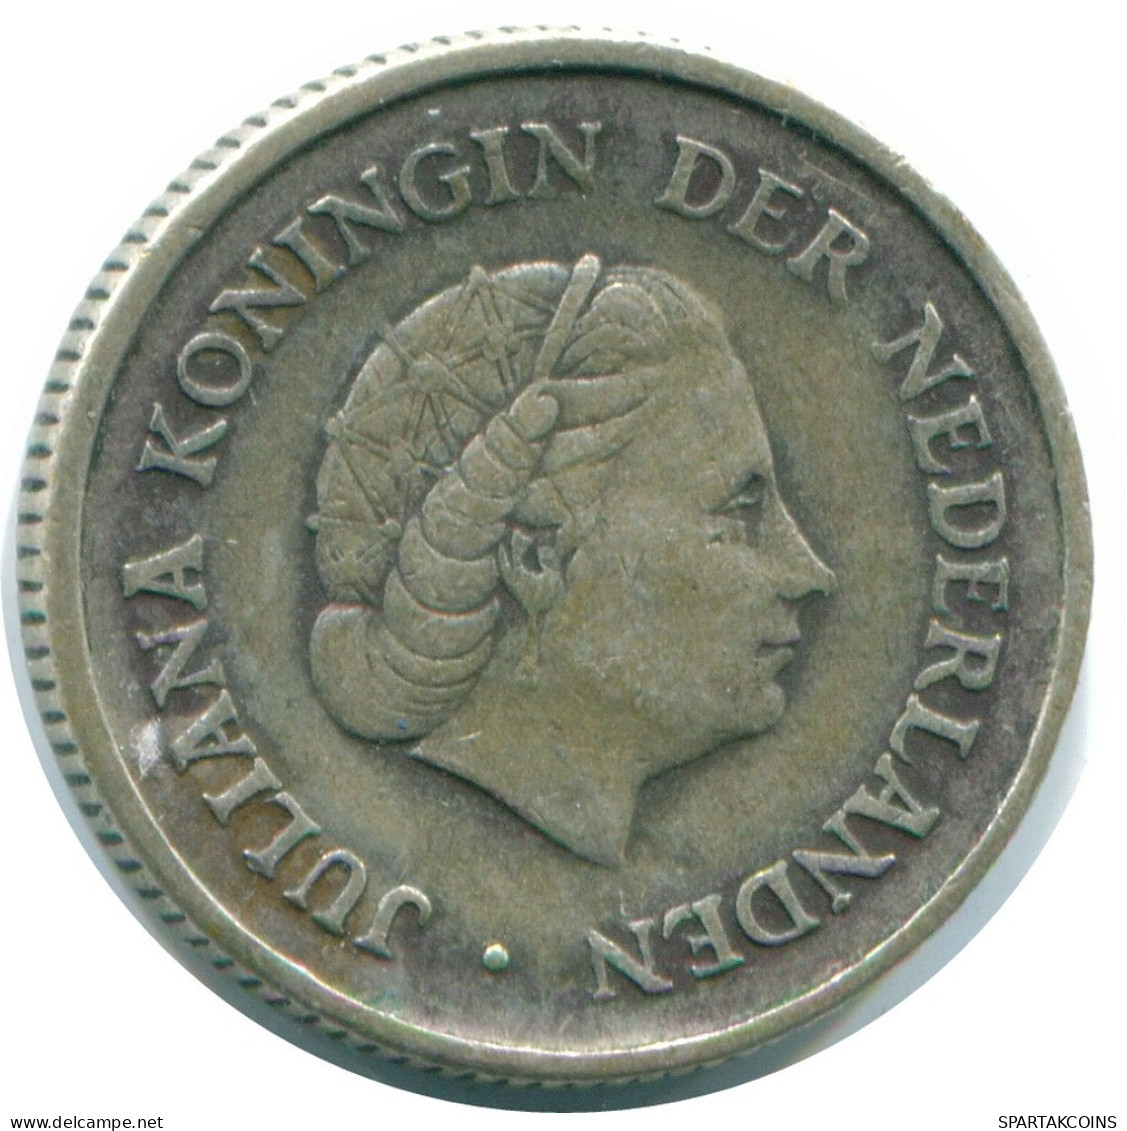 1/4 GULDEN 1965 NIEDERLÄNDISCHE ANTILLEN SILBER Koloniale Münze #NL11414.4.D.A - Niederländische Antillen